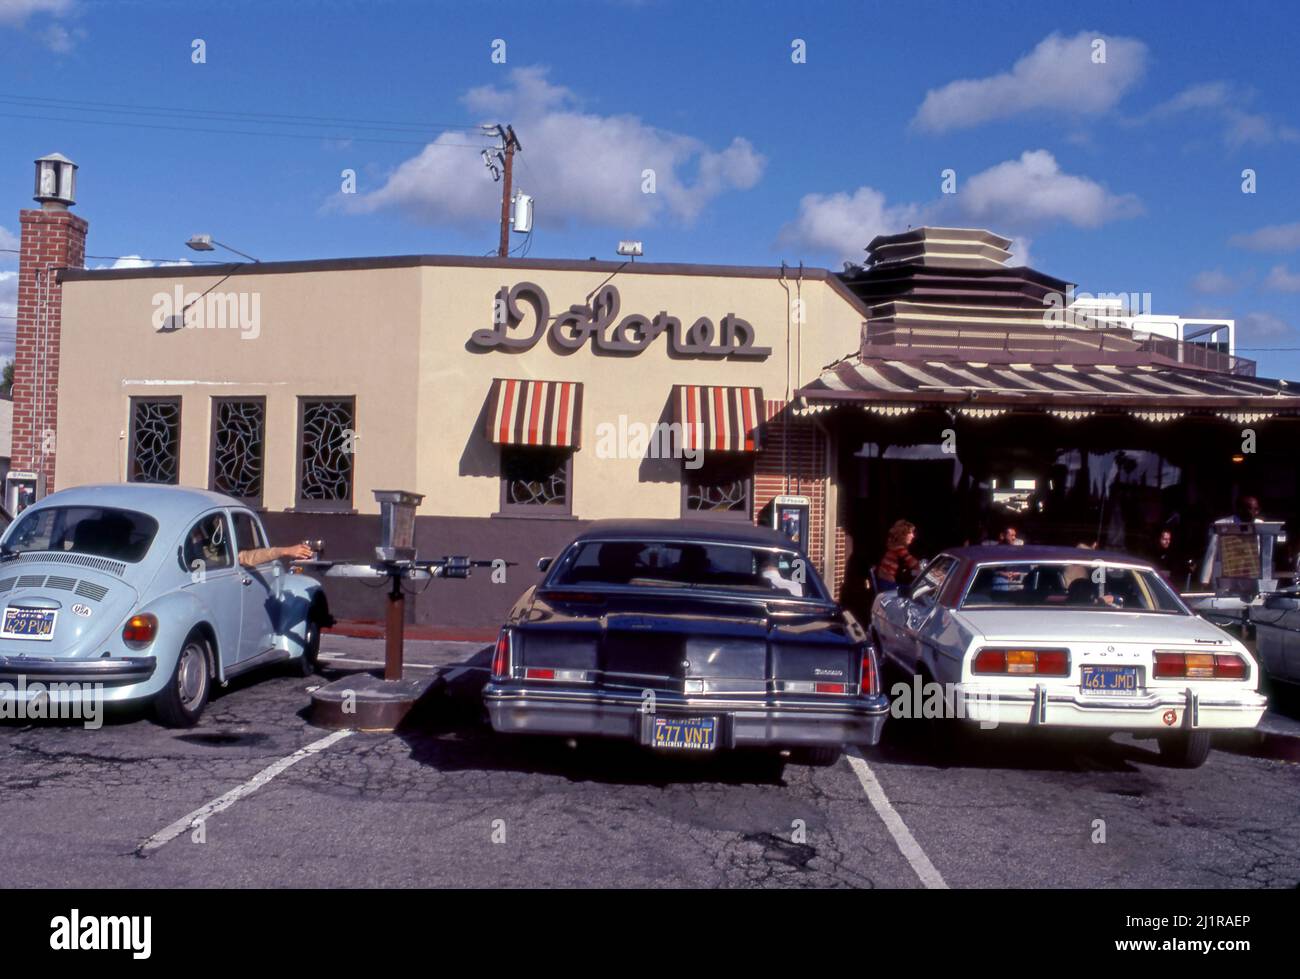 Dolores era un ristorante drive-in con servizio di carhop su Wilshire Blvd. A la Cienega a Los Angeles, CA Foto Stock